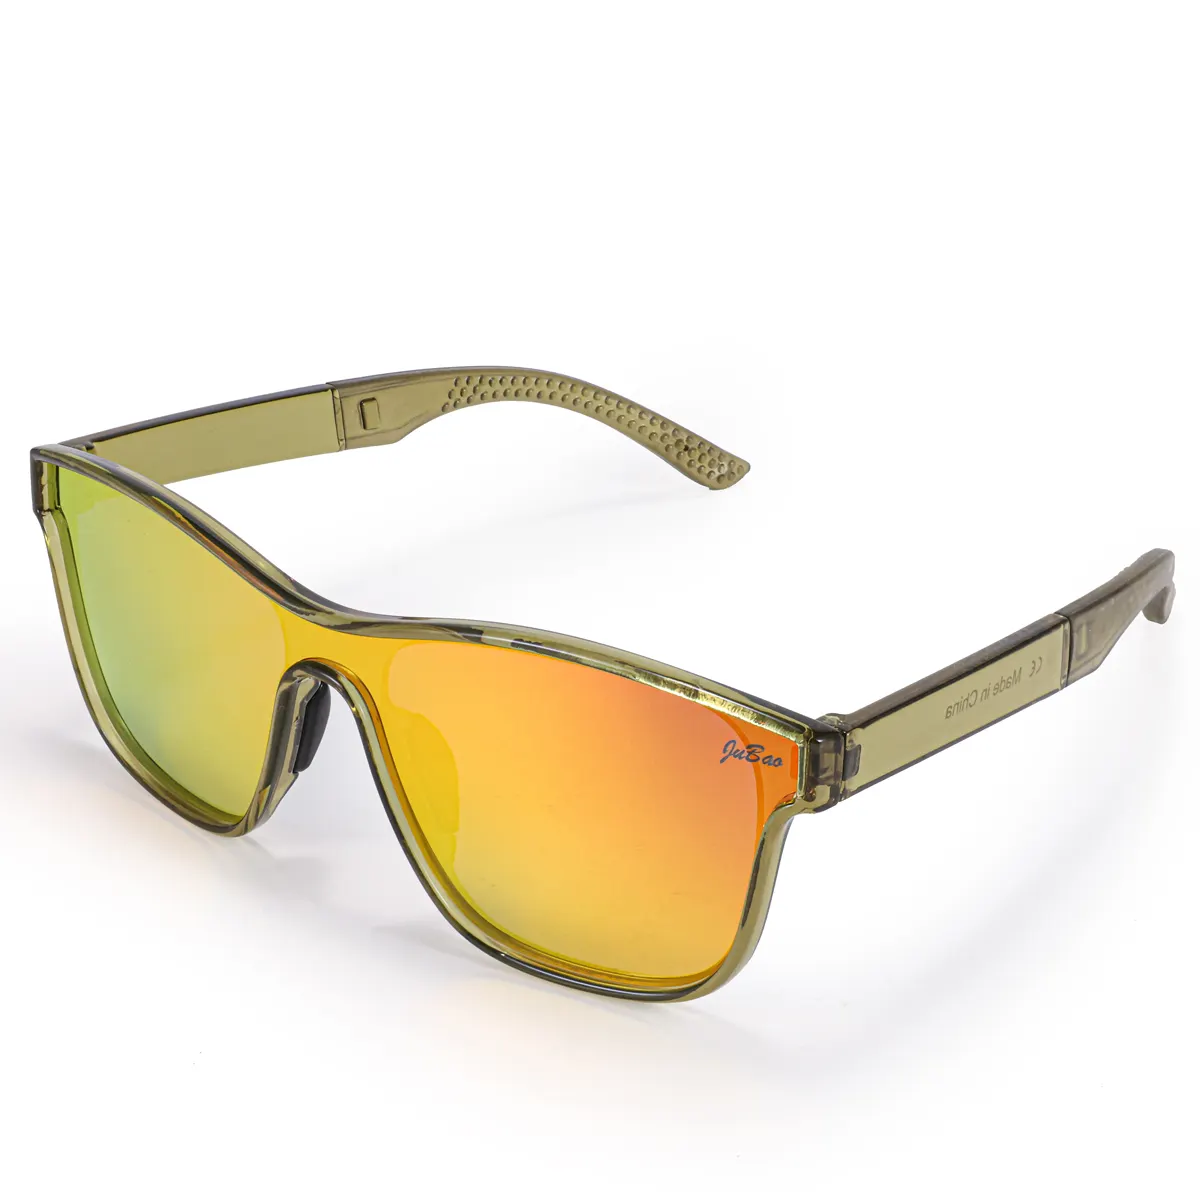 HUBO 508 polarizzati occhiali da sole sportivi UV400 escursionismo corsa pesca guida bici da strada occhiali da sole rockbros per gli uomini delle donne